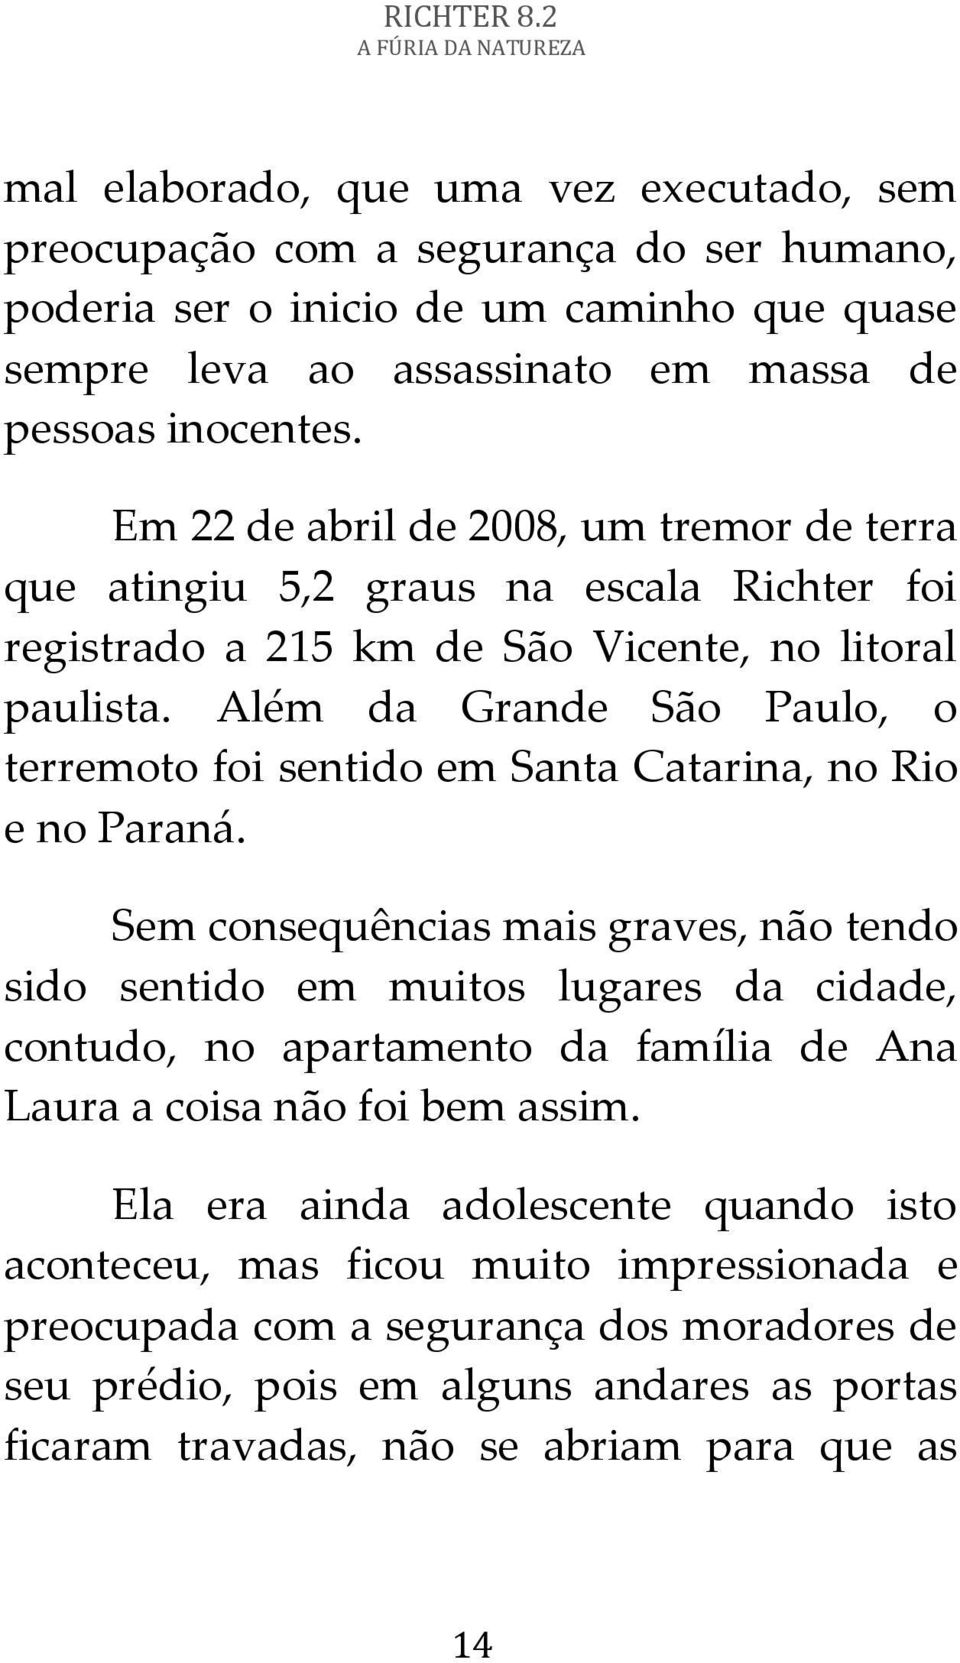 Além da Grande São Paulo, o terremoto foi sentido em Santa Catarina, no Rio e no Paraná.